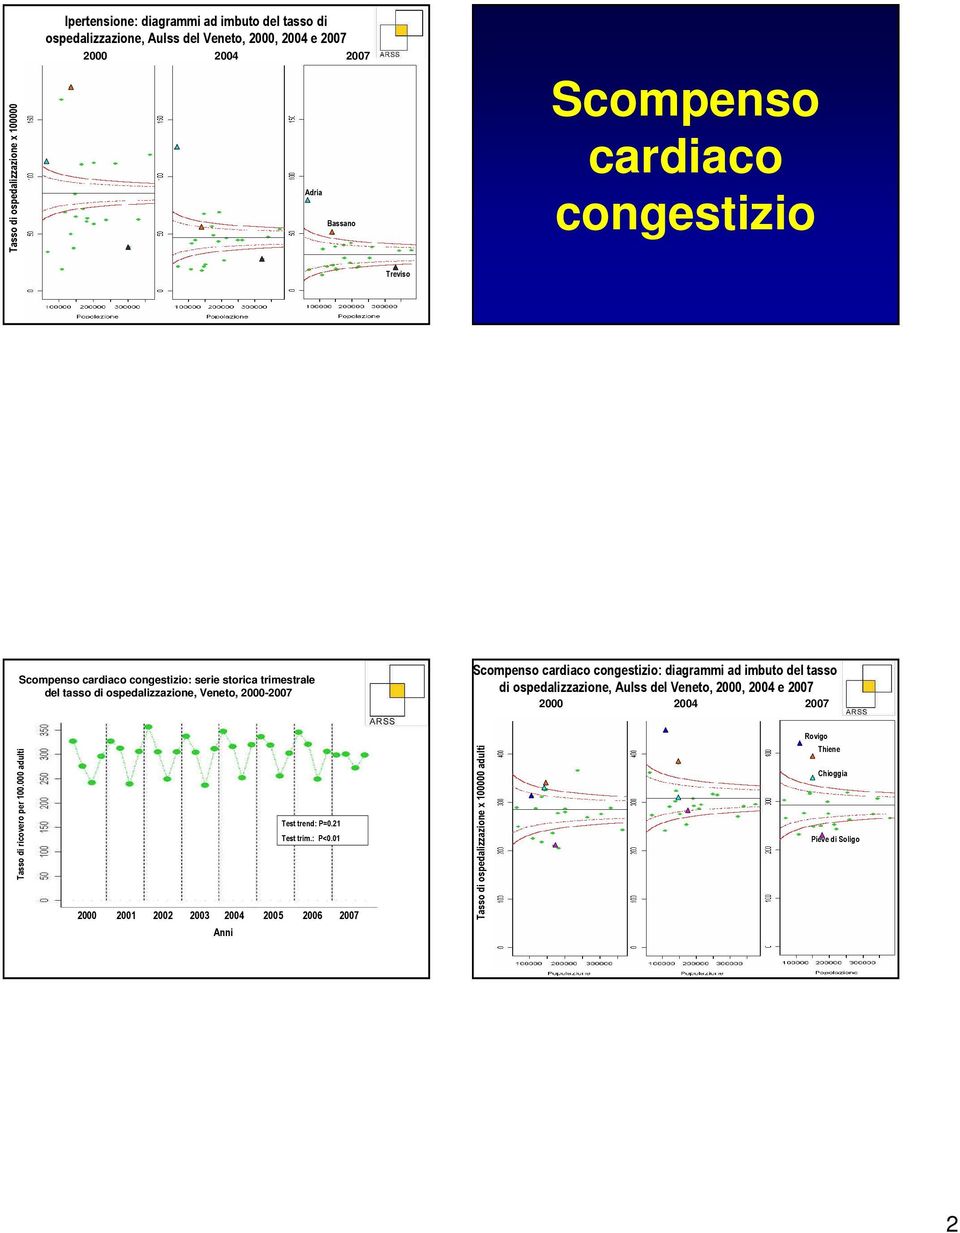 ospedalizzazione, Veneto, 2-27 Scompenso cardiaco congestizio: diagrammi ad imbuto del tasso di ospedalizzazione, Aulss del Veneto,